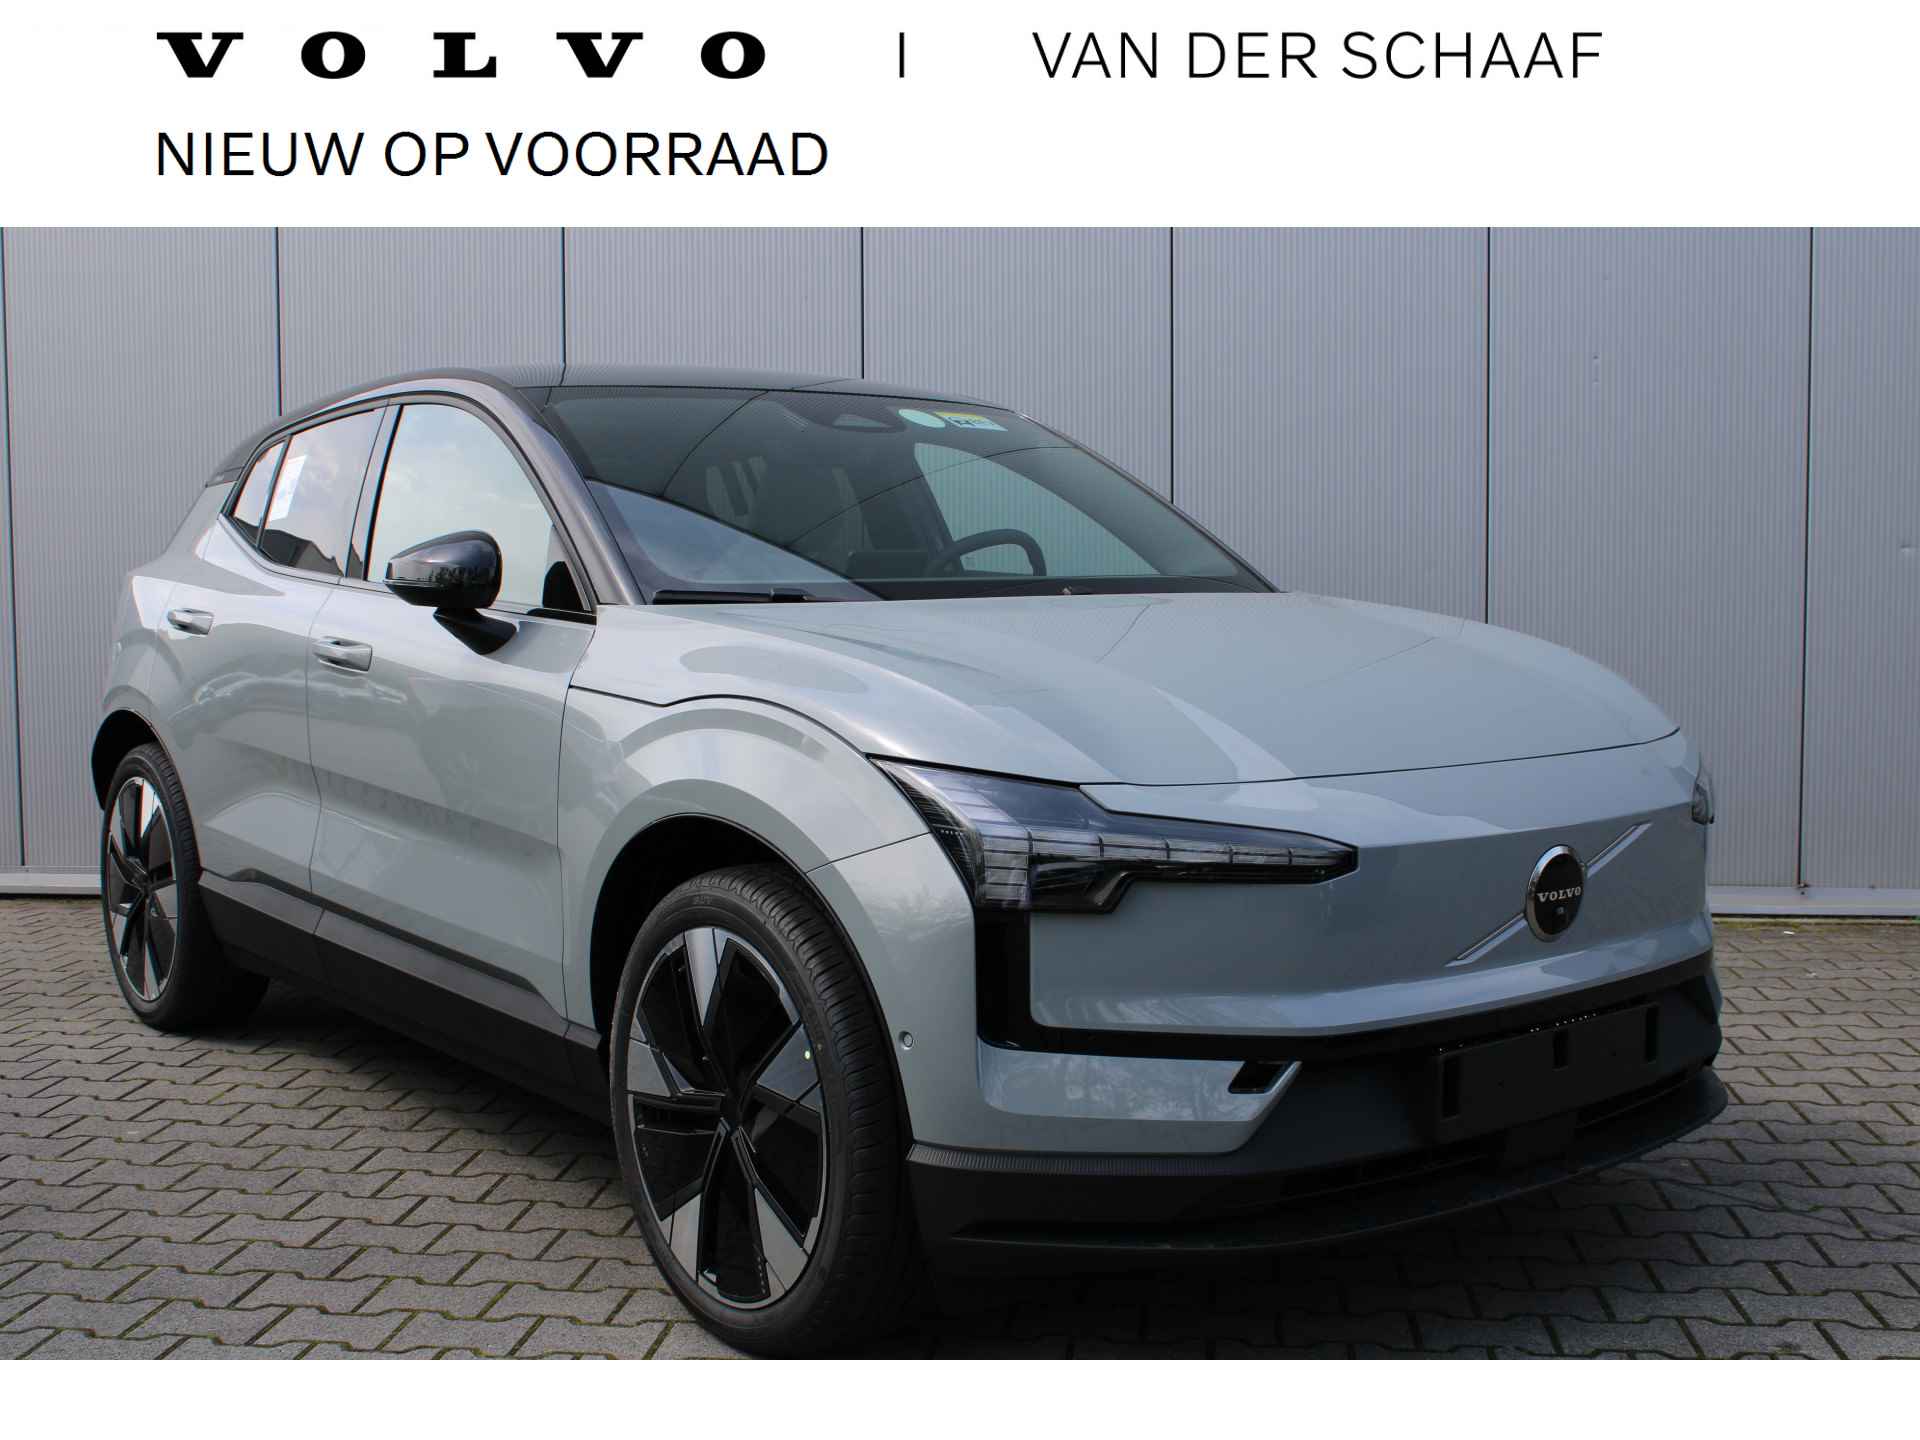 Volvo EX30 Extended Range Plus 69 kWh | Pine Interieur | komt in aanmerking voor € 2950,- subsidie | Stoel verwarming | direct leverbaar - 1/8